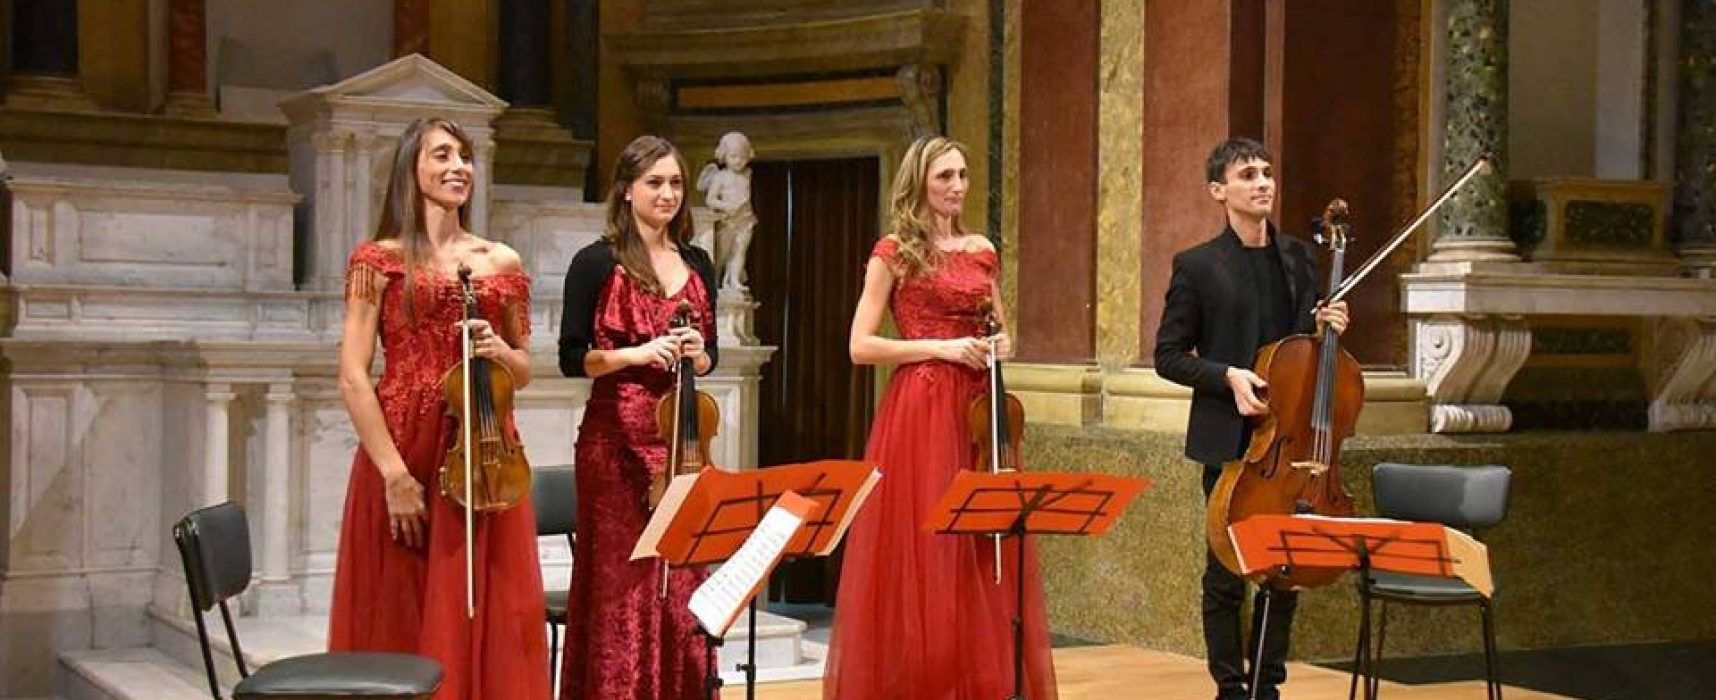 Quartetto fratelli Carabellese/Pietro Laera in “Romantiche Emozioni” al Garibaldi